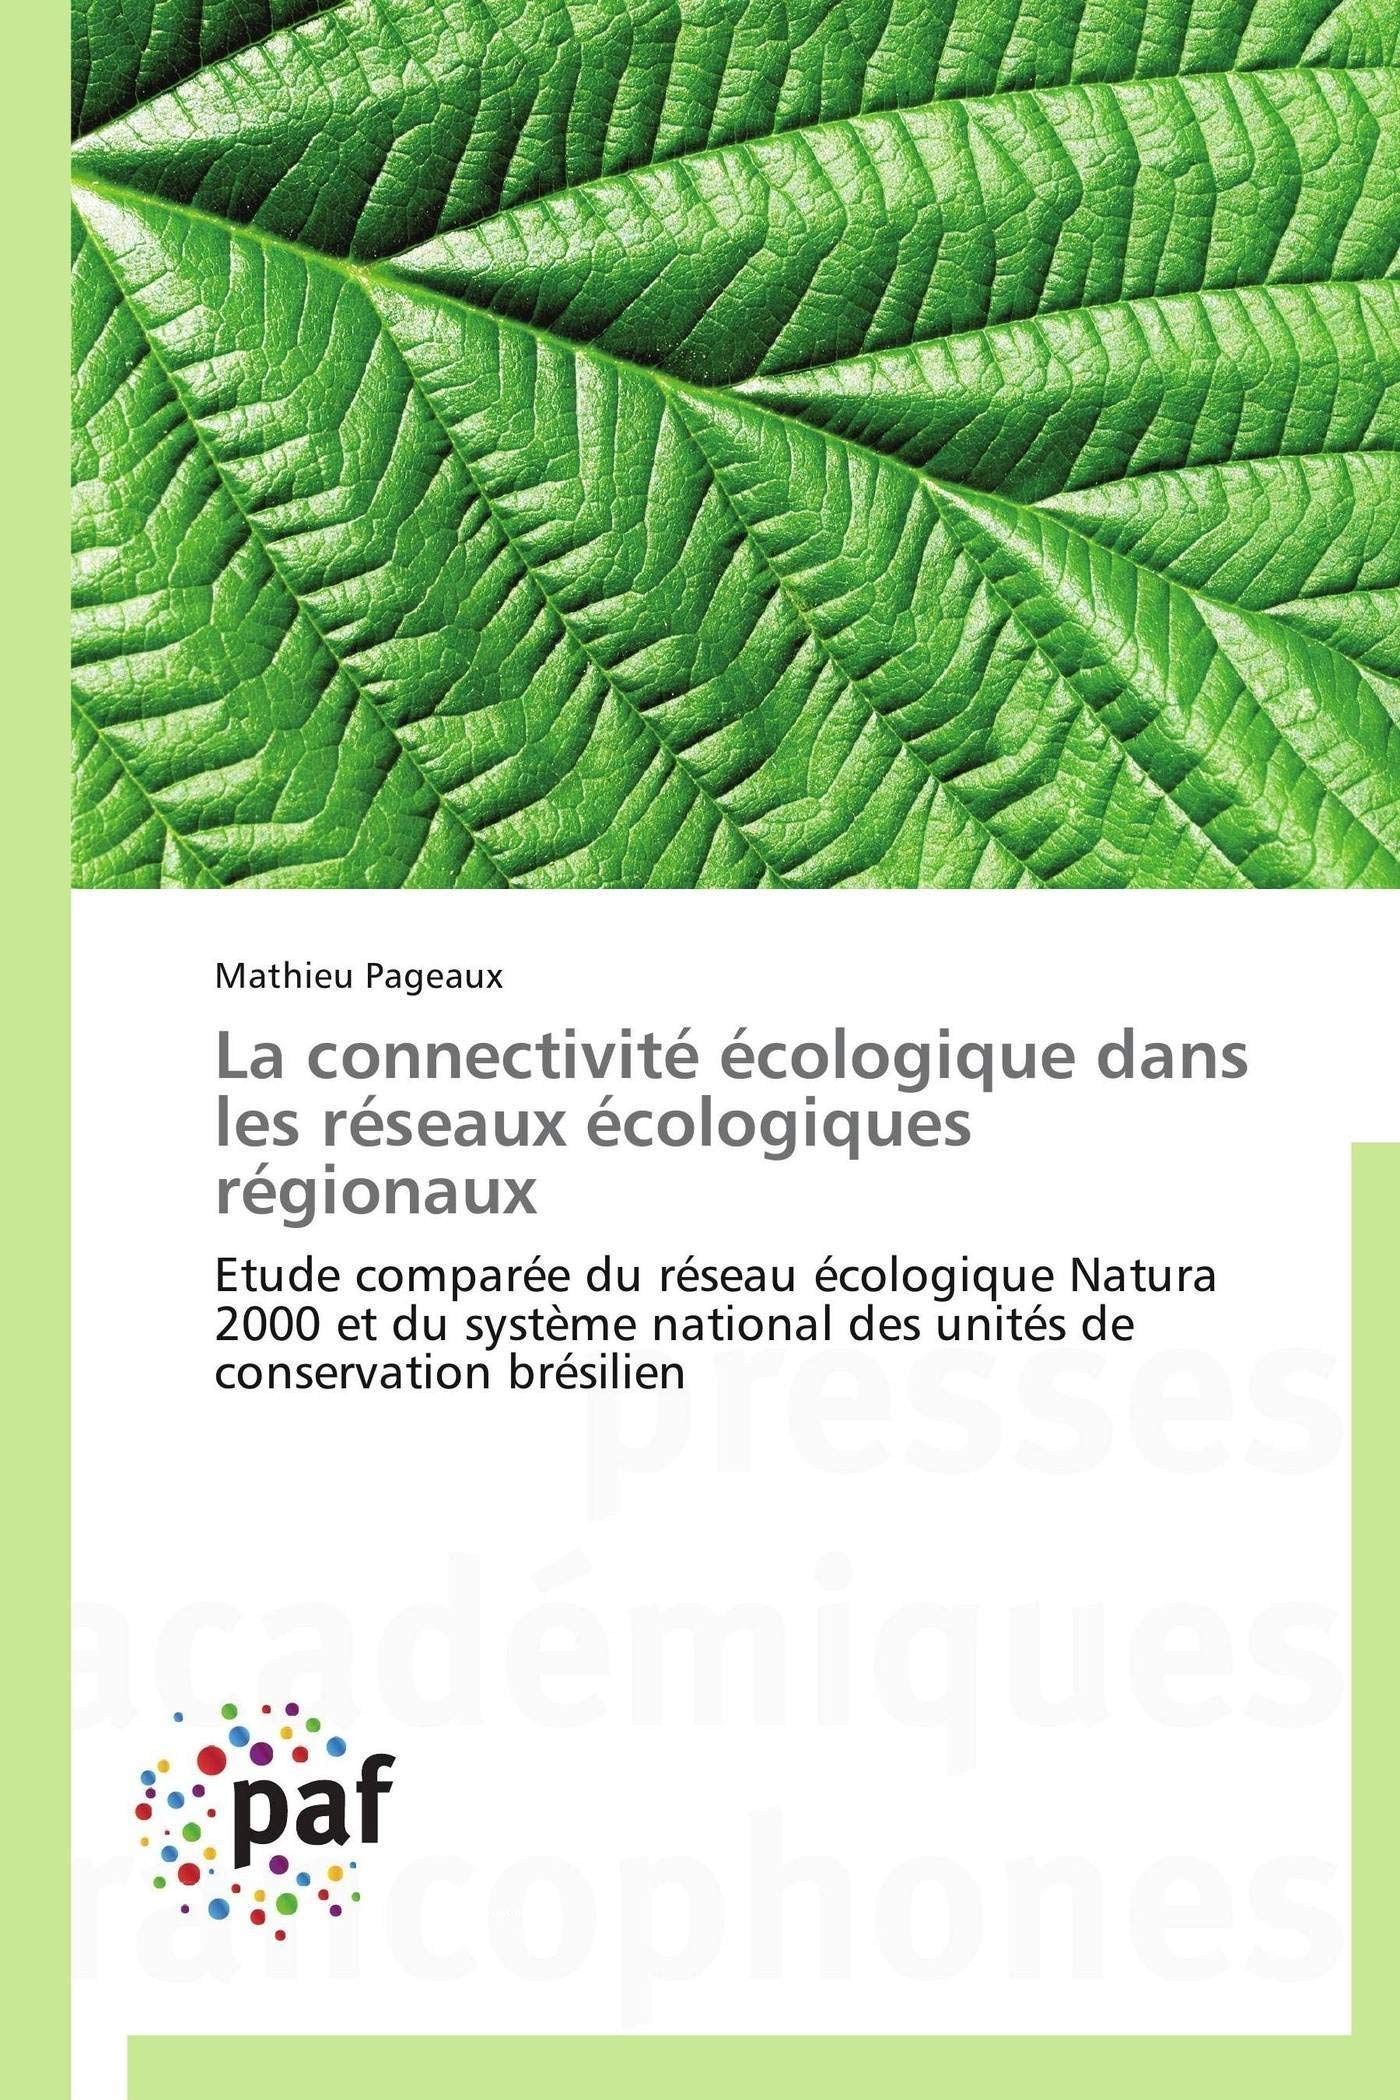 La connectivité écologie dans les réseaux écologiques régionaux